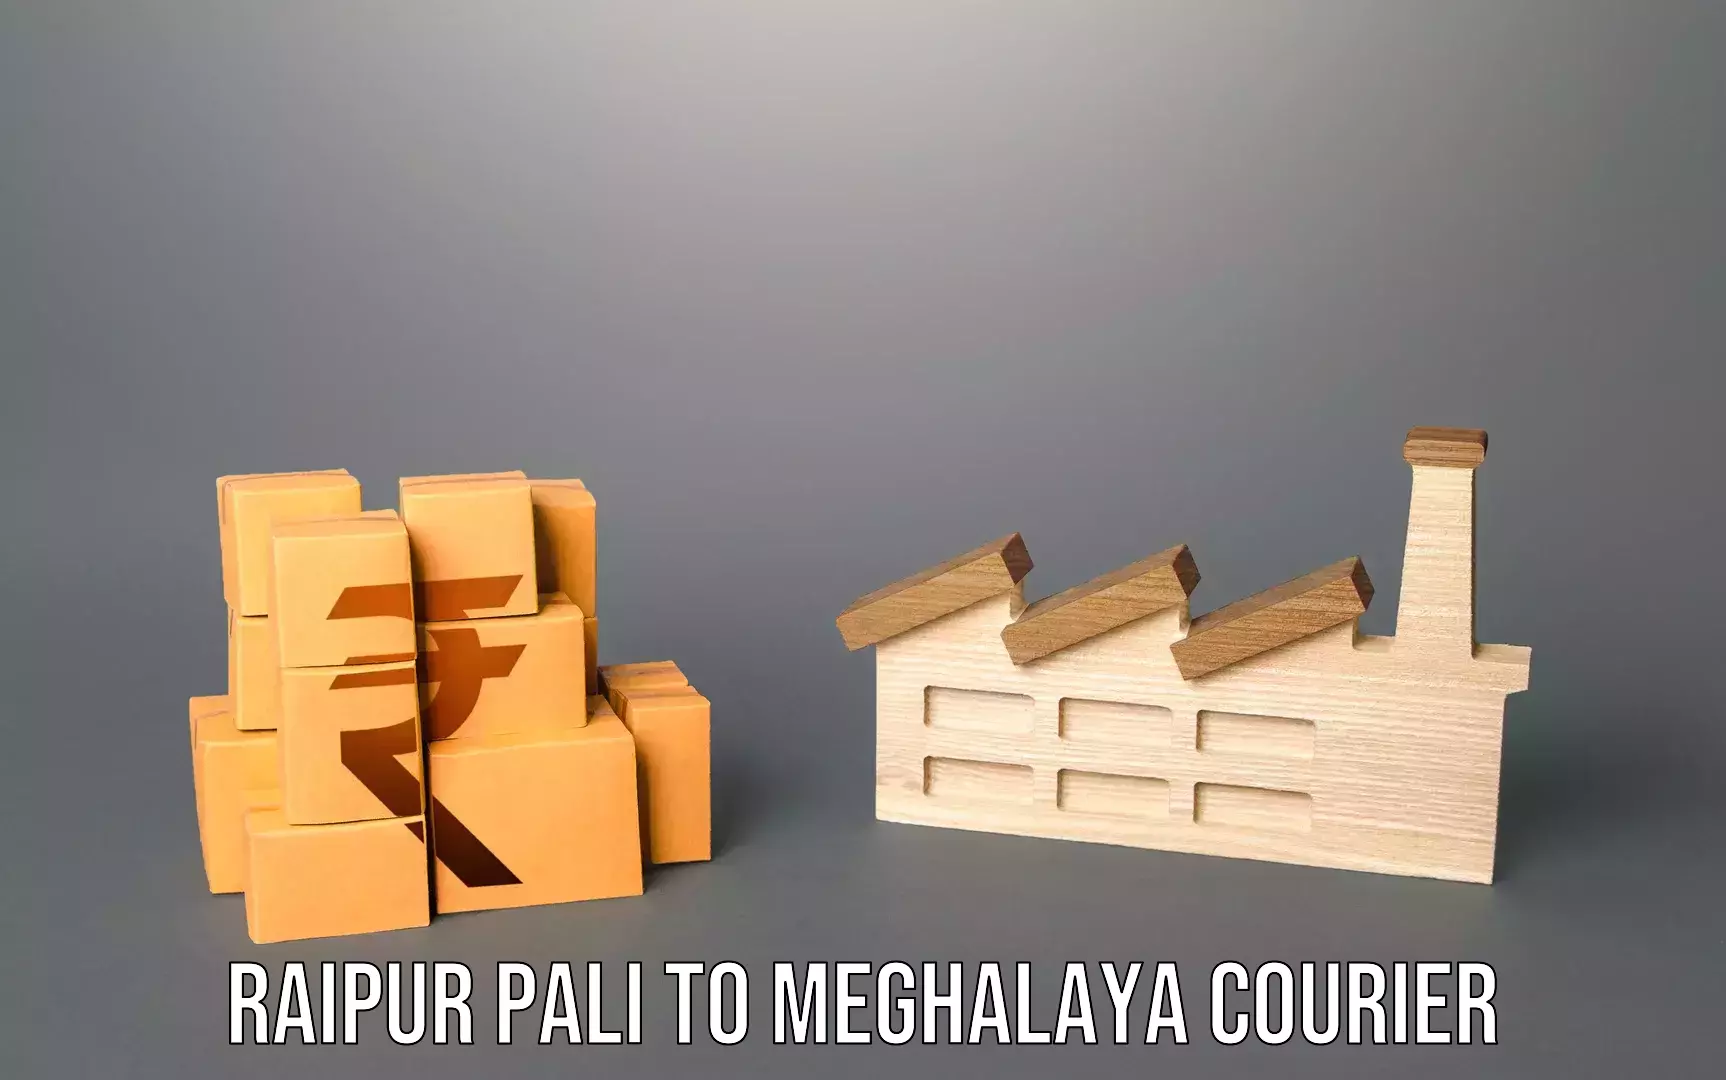 Premium luggage courier Raipur Pali to Meghalaya